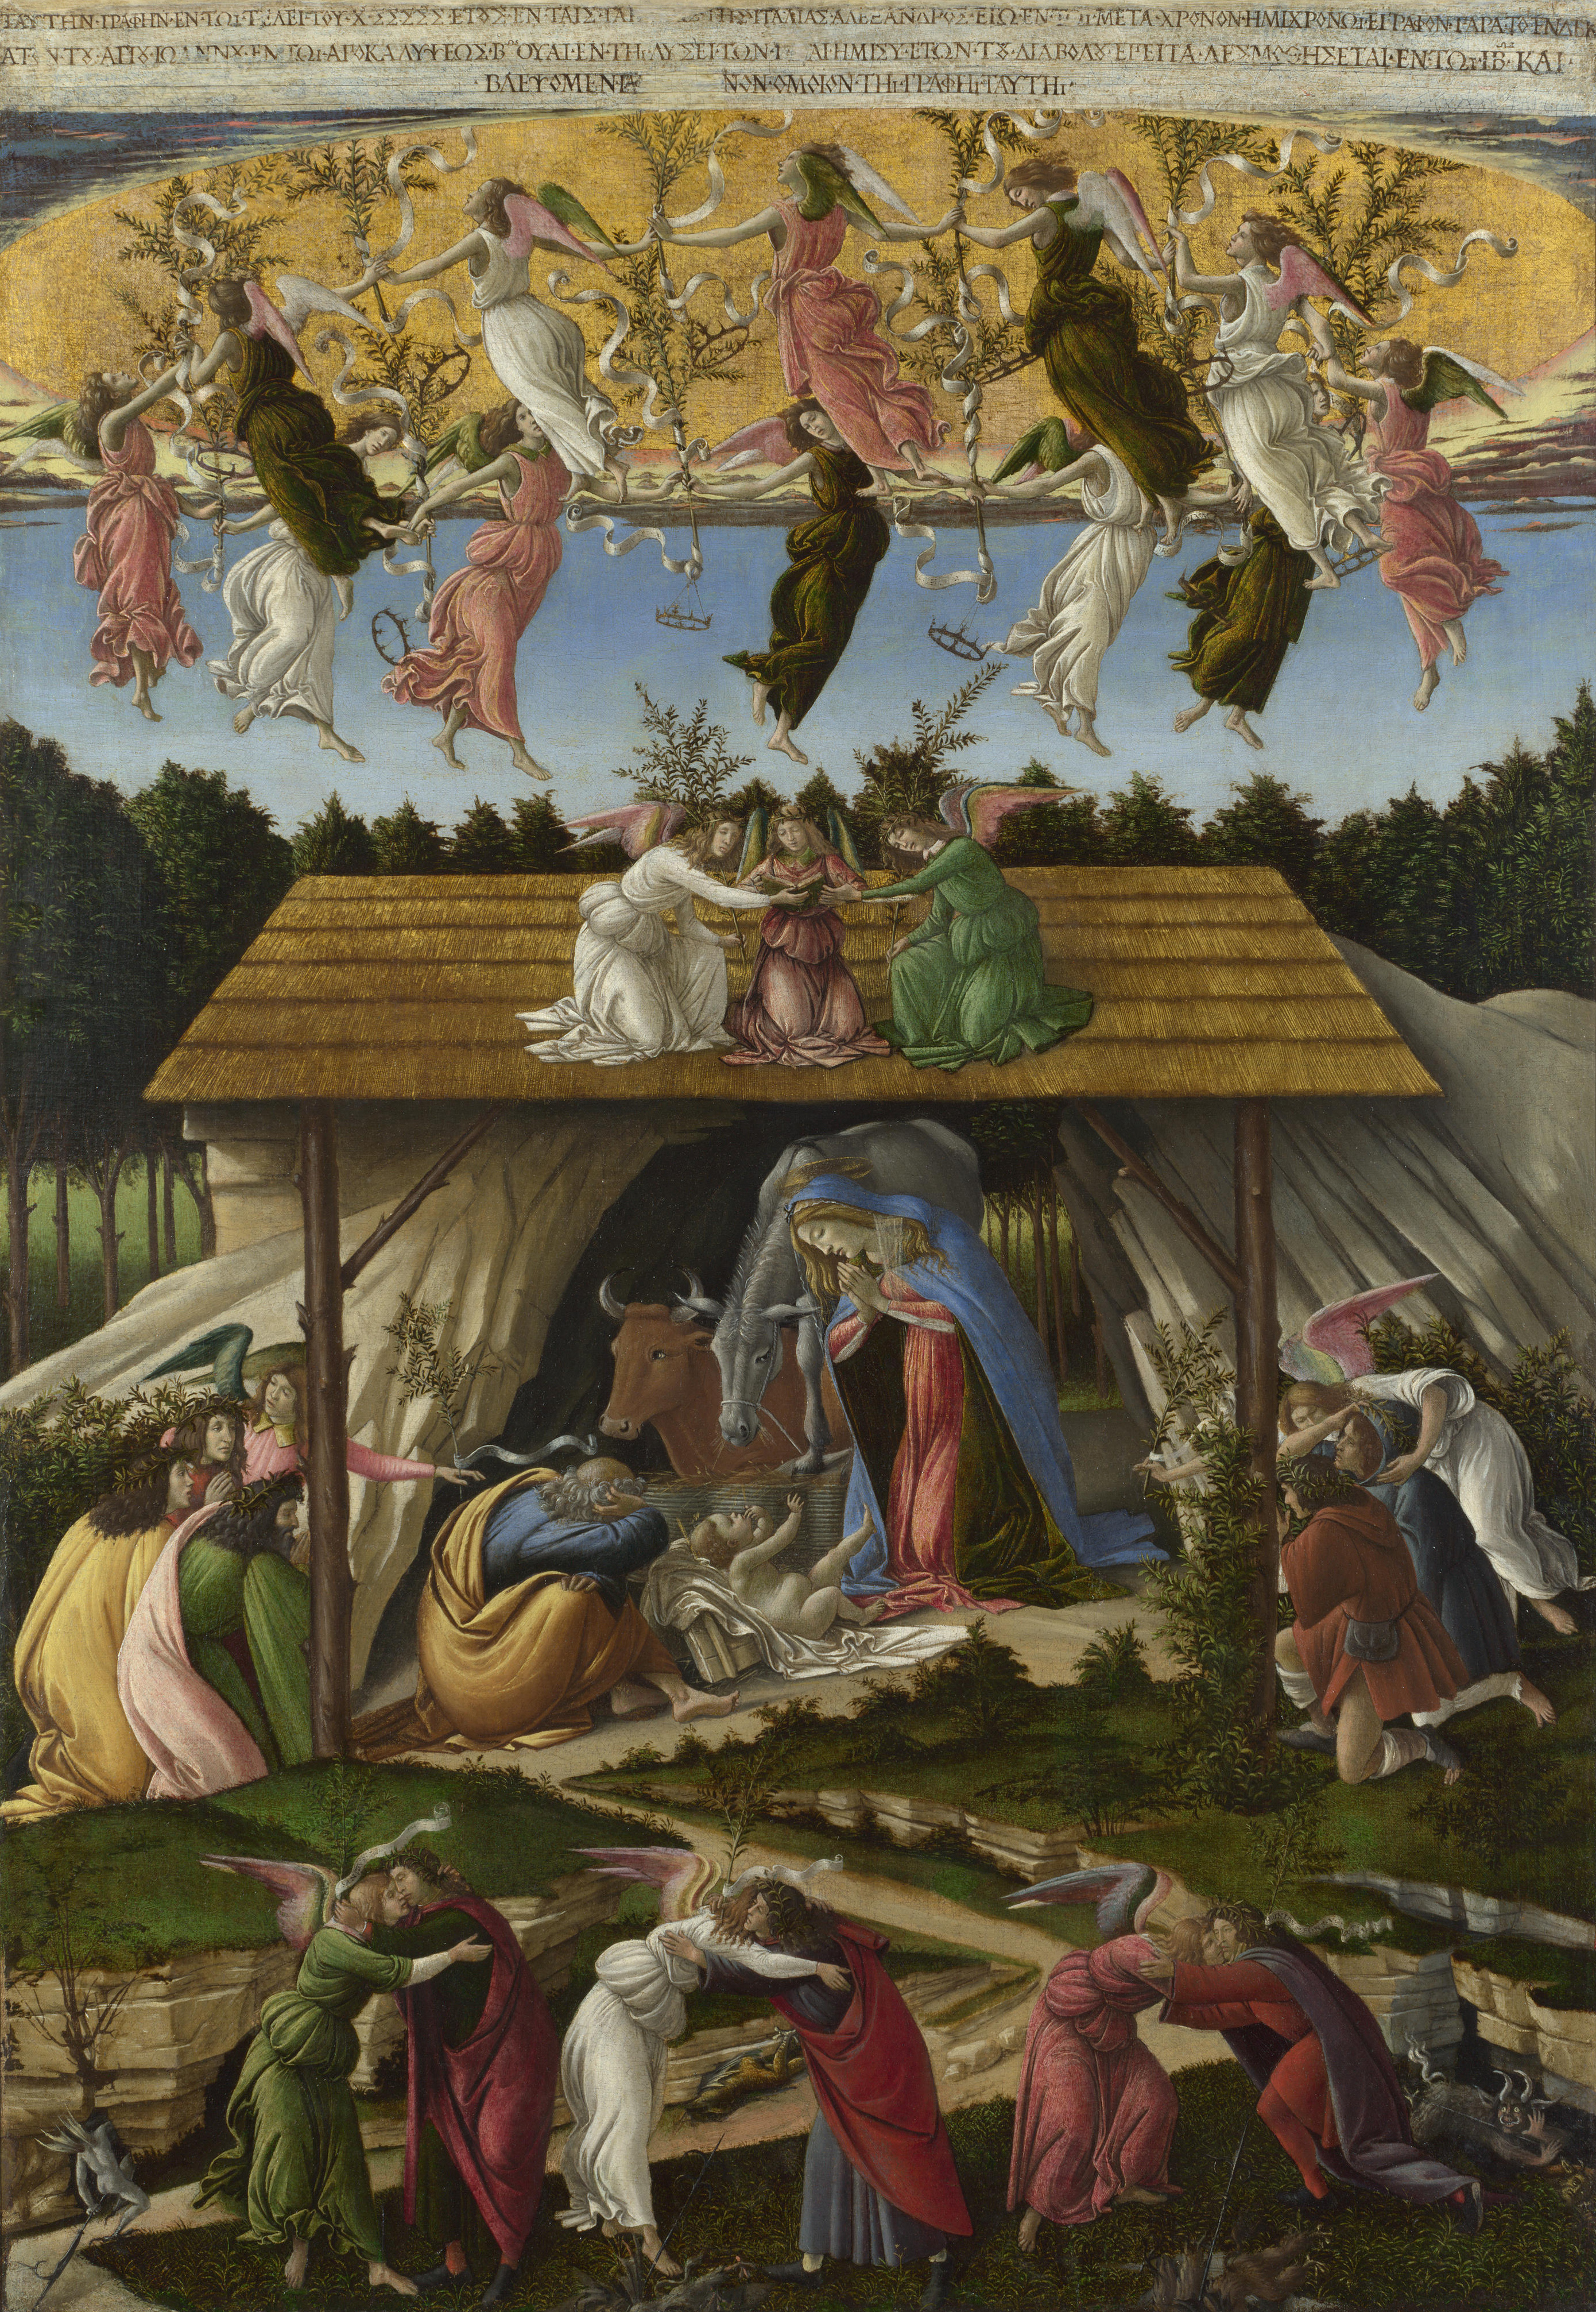 Die Mystische Krippe by Sandro Botticelli - 1501 - 108.6 x 74.9 cm National Gallery